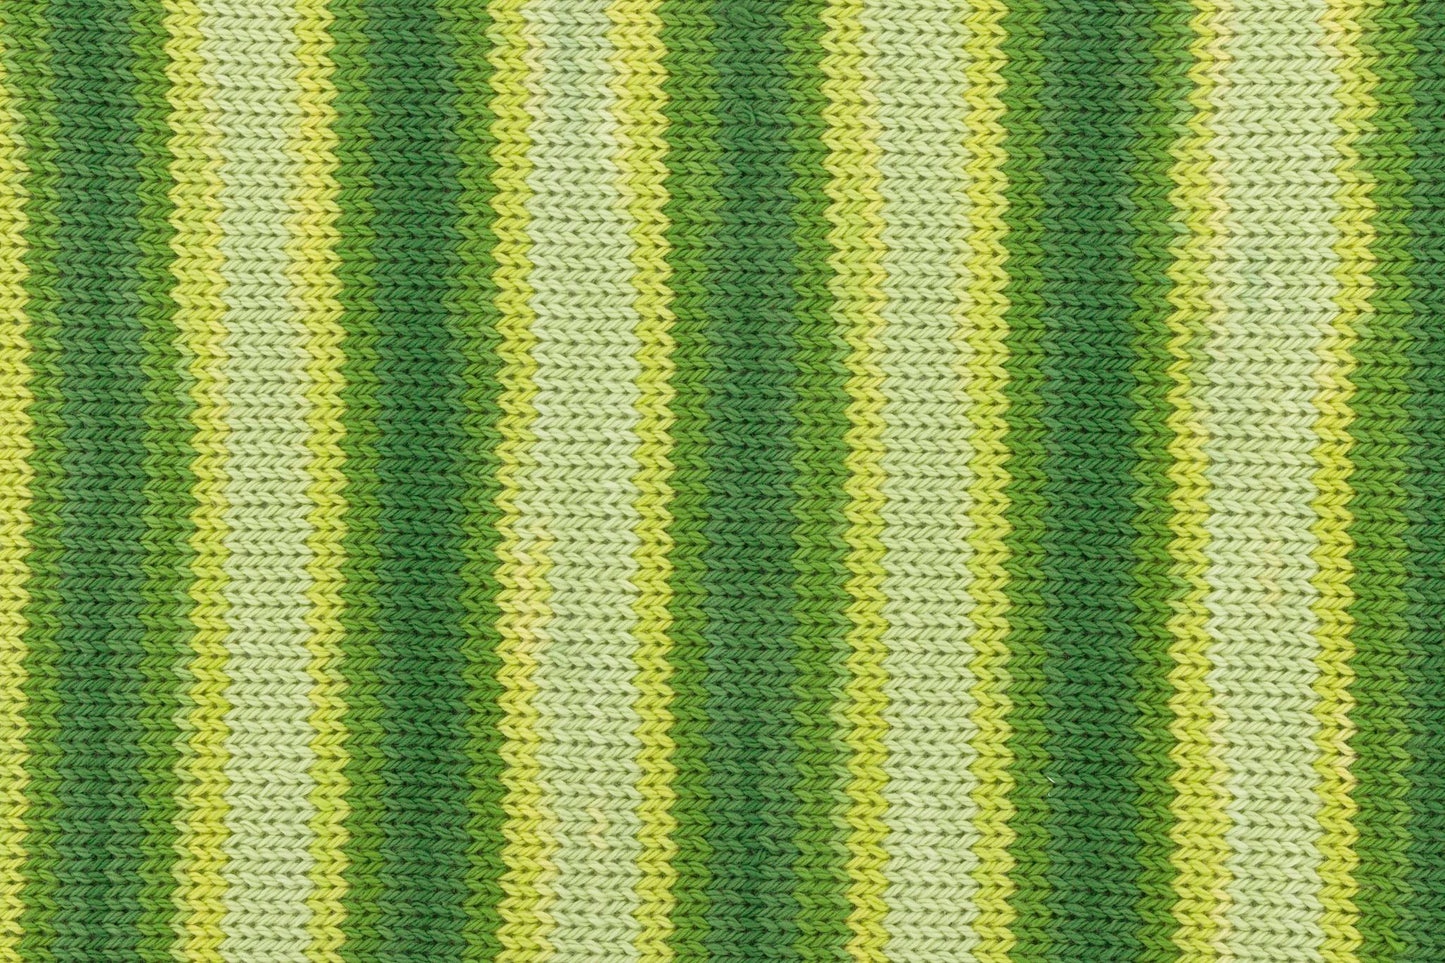 Tropic Cotton 150g, 90287, Farbe 5, apfel